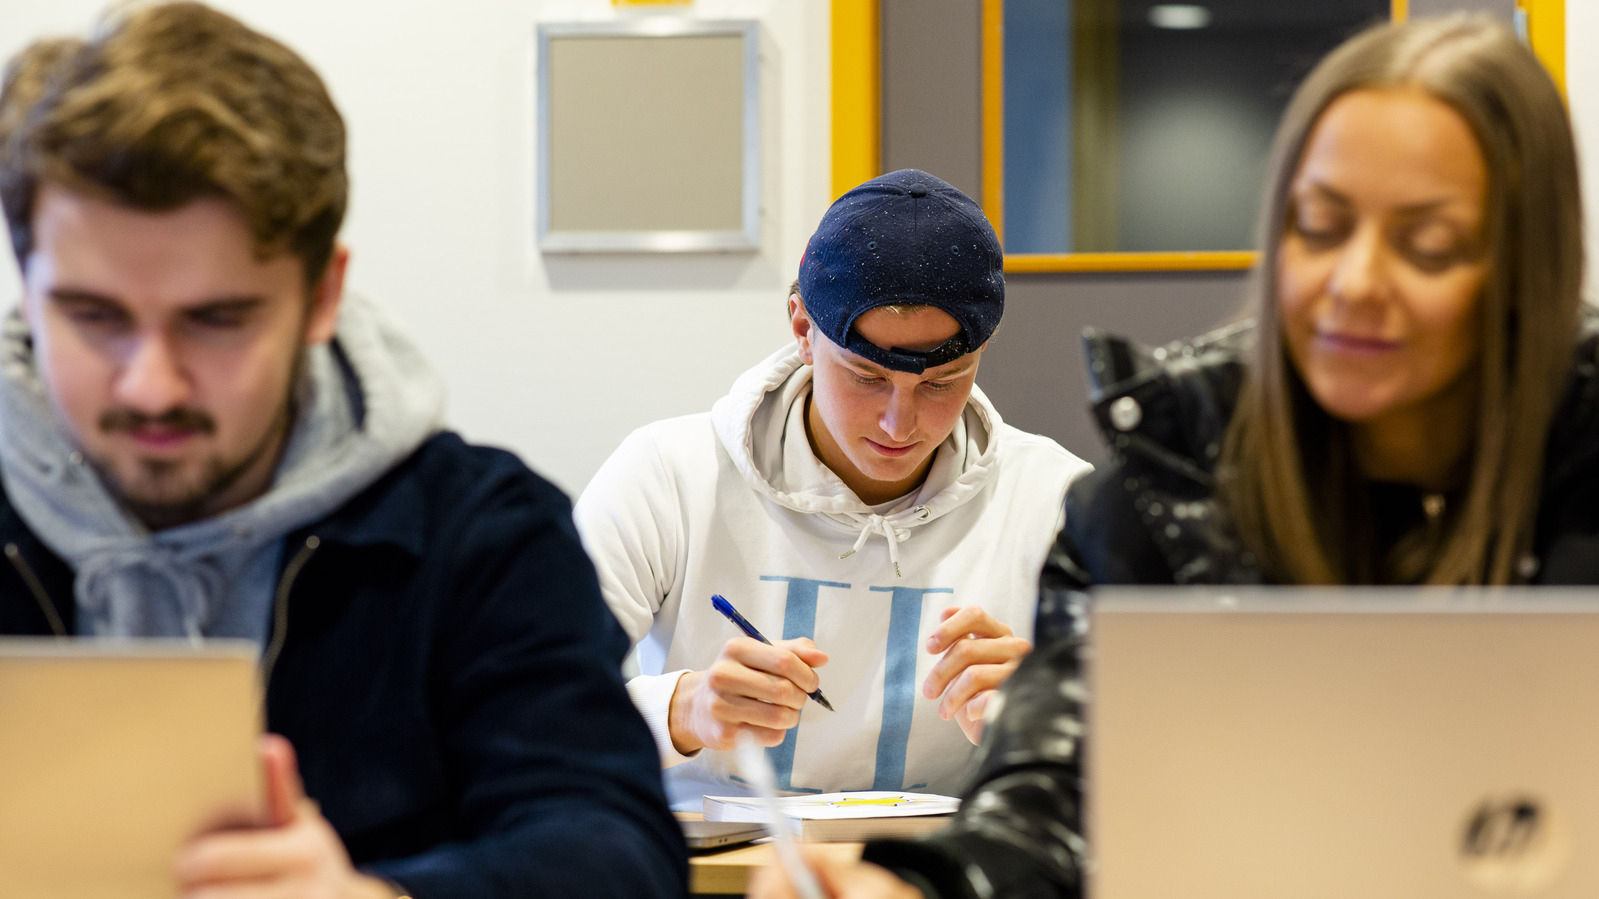 Studenter i et klassrom. En mann i fokus, han har en blå caps bakfrem, og sitter med en penn i hånden. To andre i front sitter å ser på hver sin laptop, den ene en dame, den andere en mann.